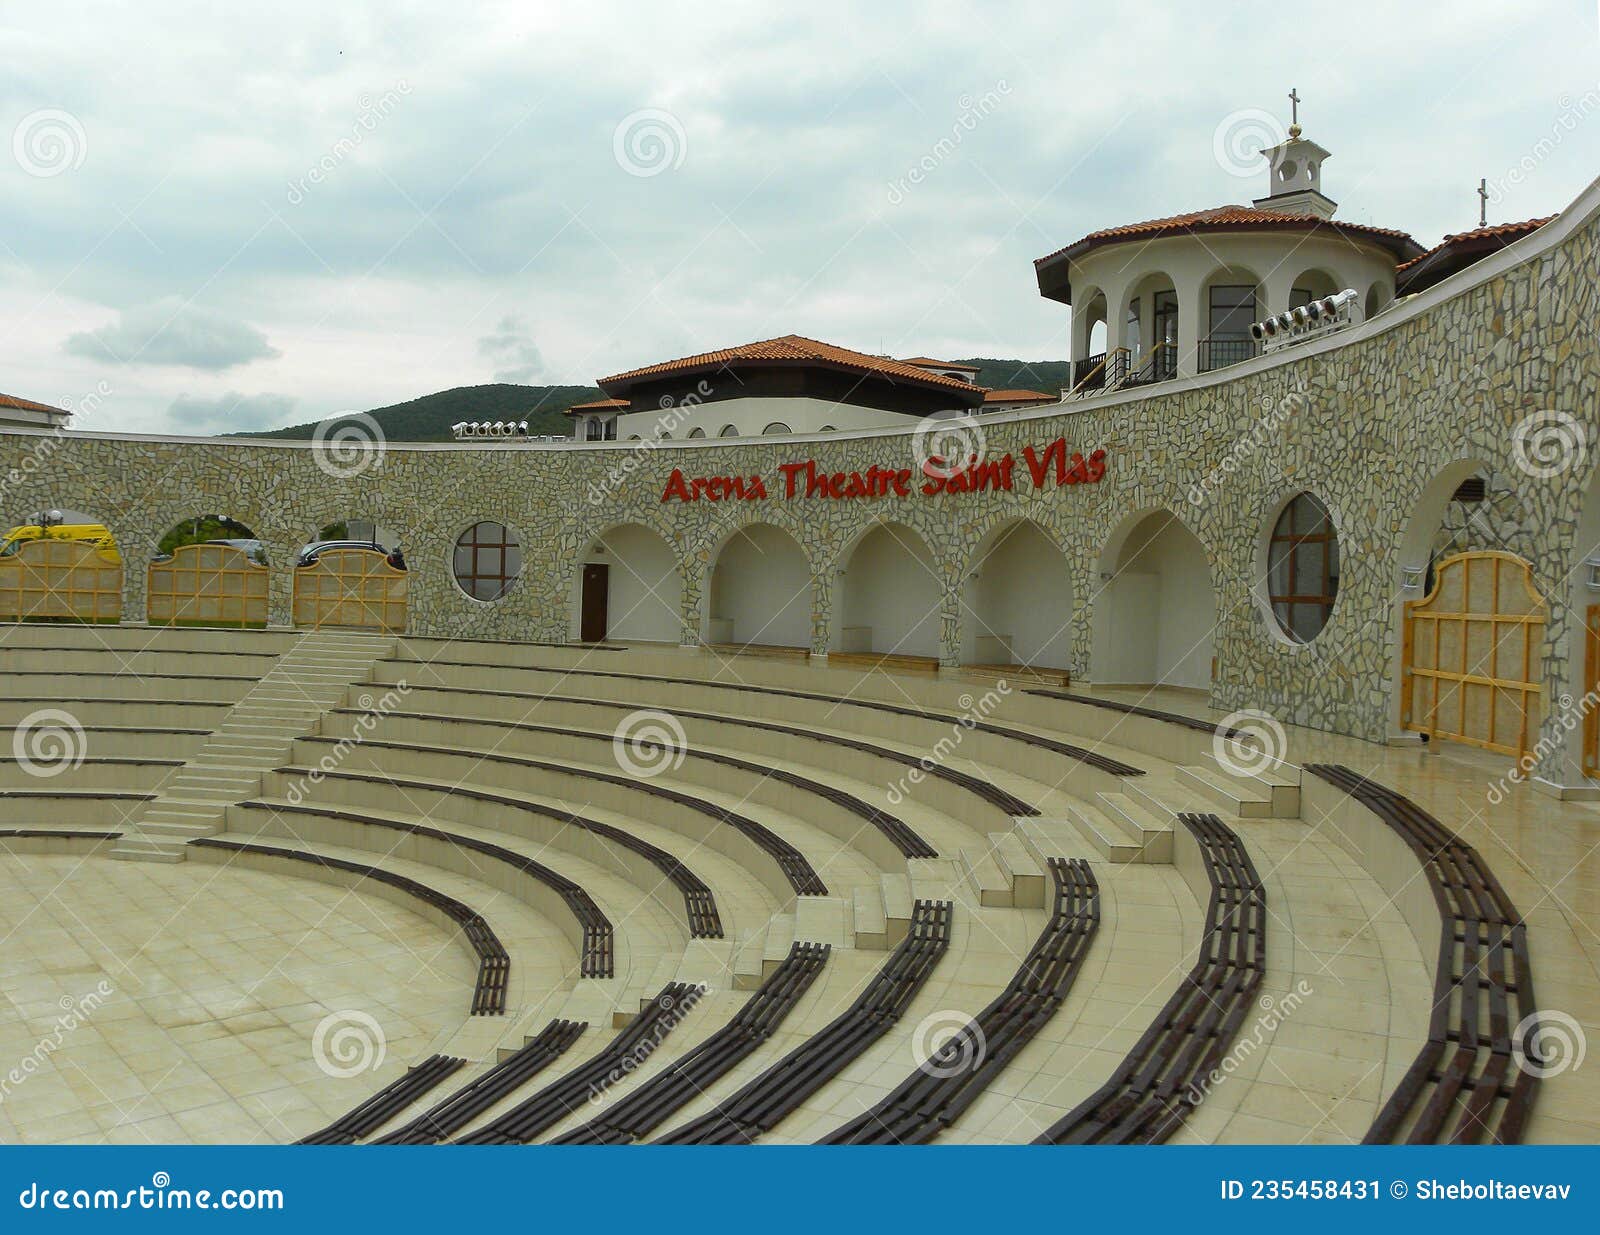 Bulgaria, Sveti Vlas. Arena Theater Saint Vlas Editorial Photo - Image ...